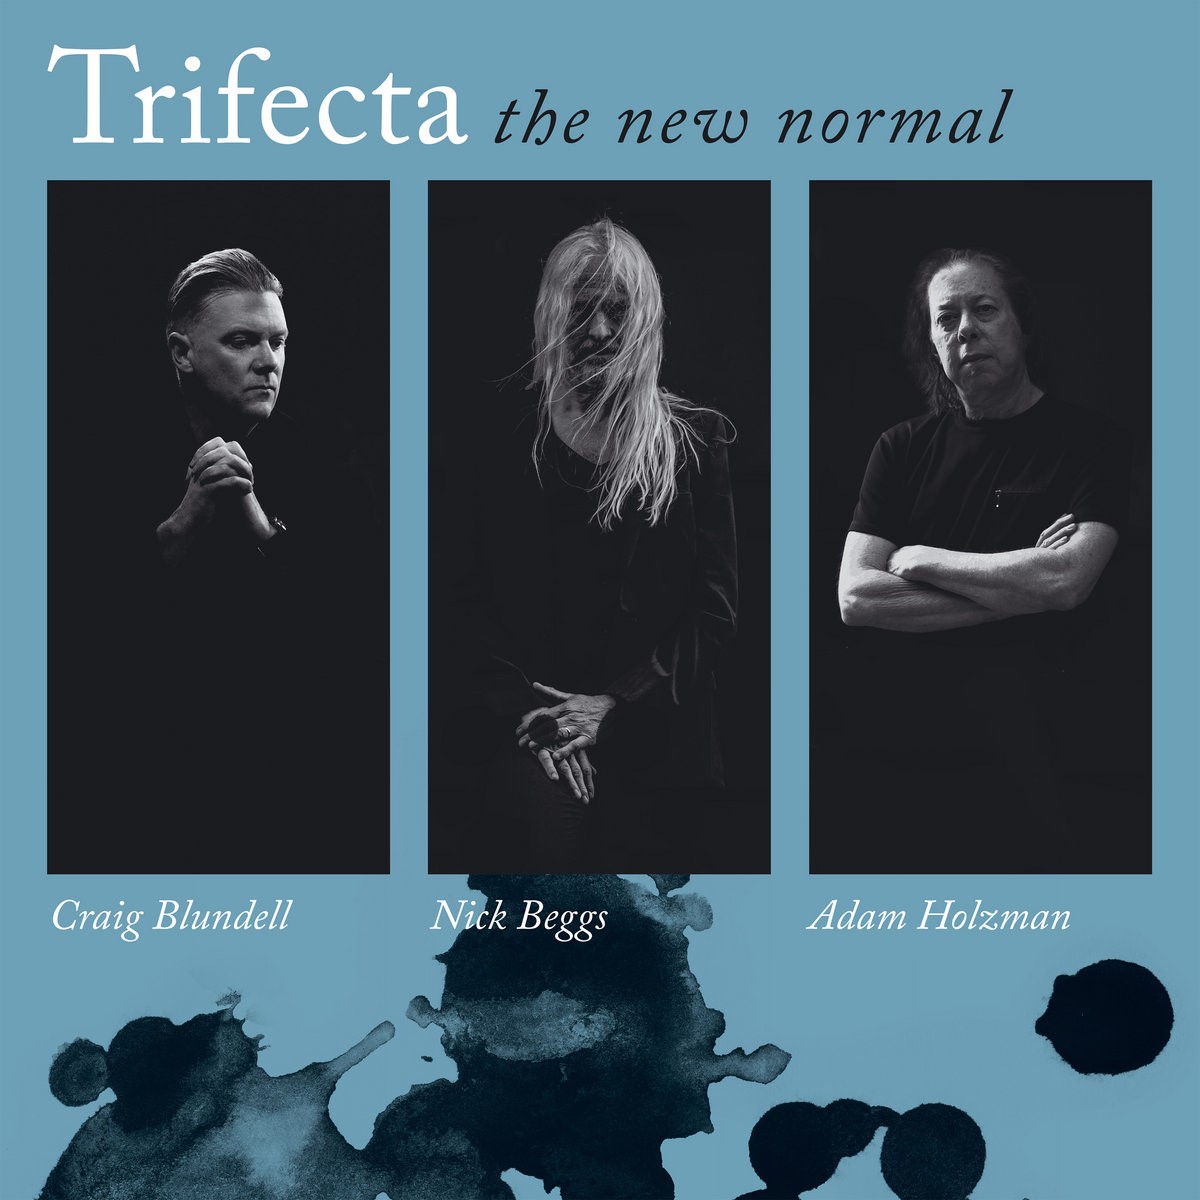 Chronique de : 'The New Normal' Par Trifecta
progcritique.com/trifecta-the-n…
@TrifectaHQ #newalbum #review #progcritique #prog #progrock #progressiverock #rockprogressif #rock #rockmusic #JazzFusion